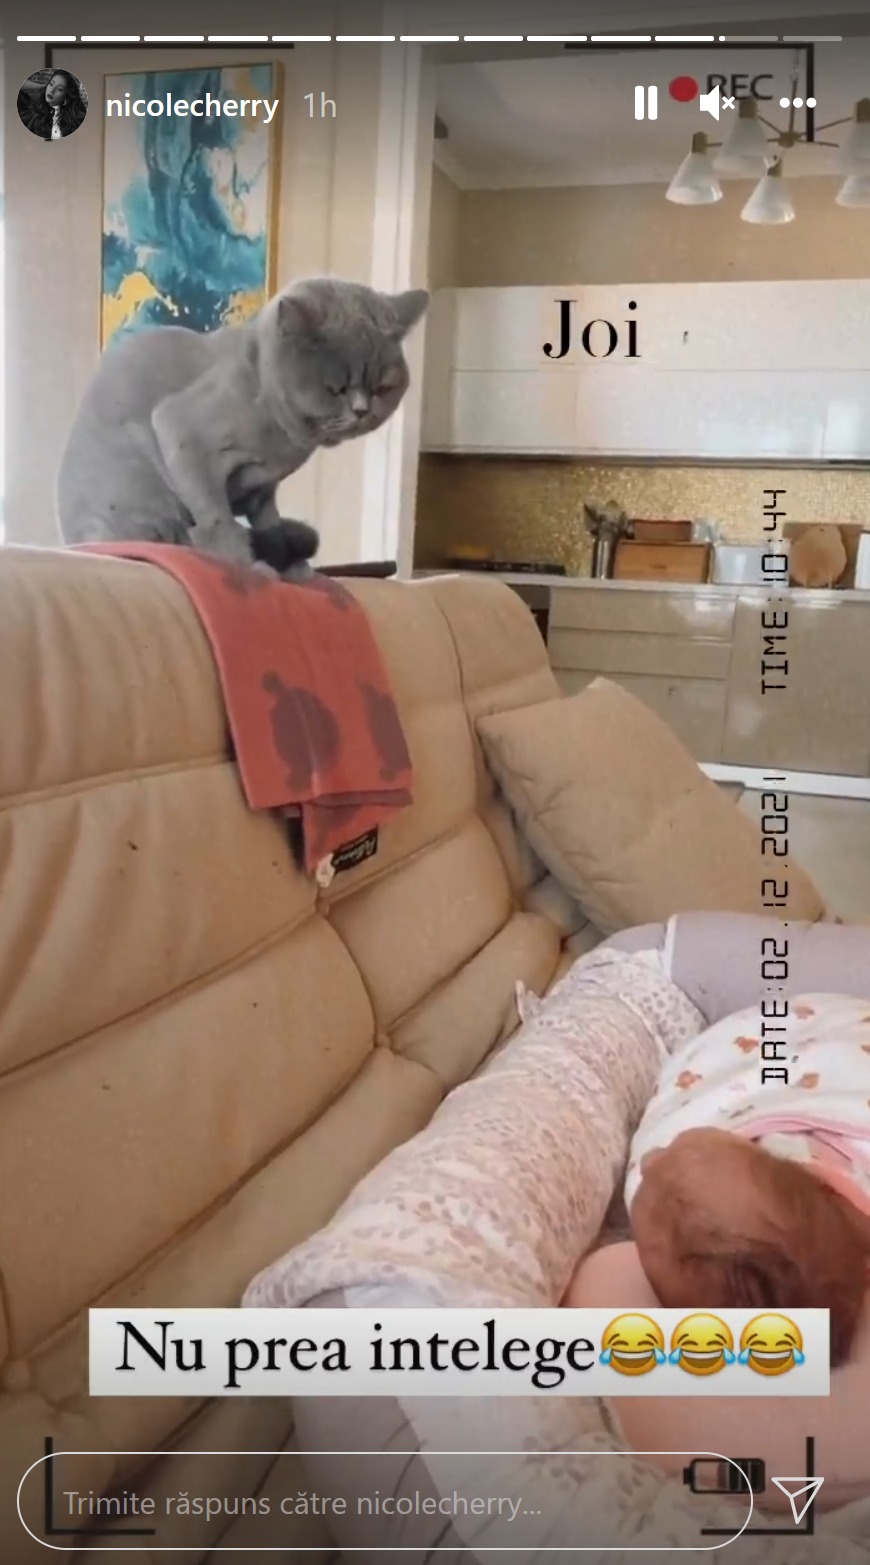 Prima imagine cu Lia, pisica lui Nicole Cherry, și Anastasia. Cum și-a tuns artista pisica pentru binele fiicei ei